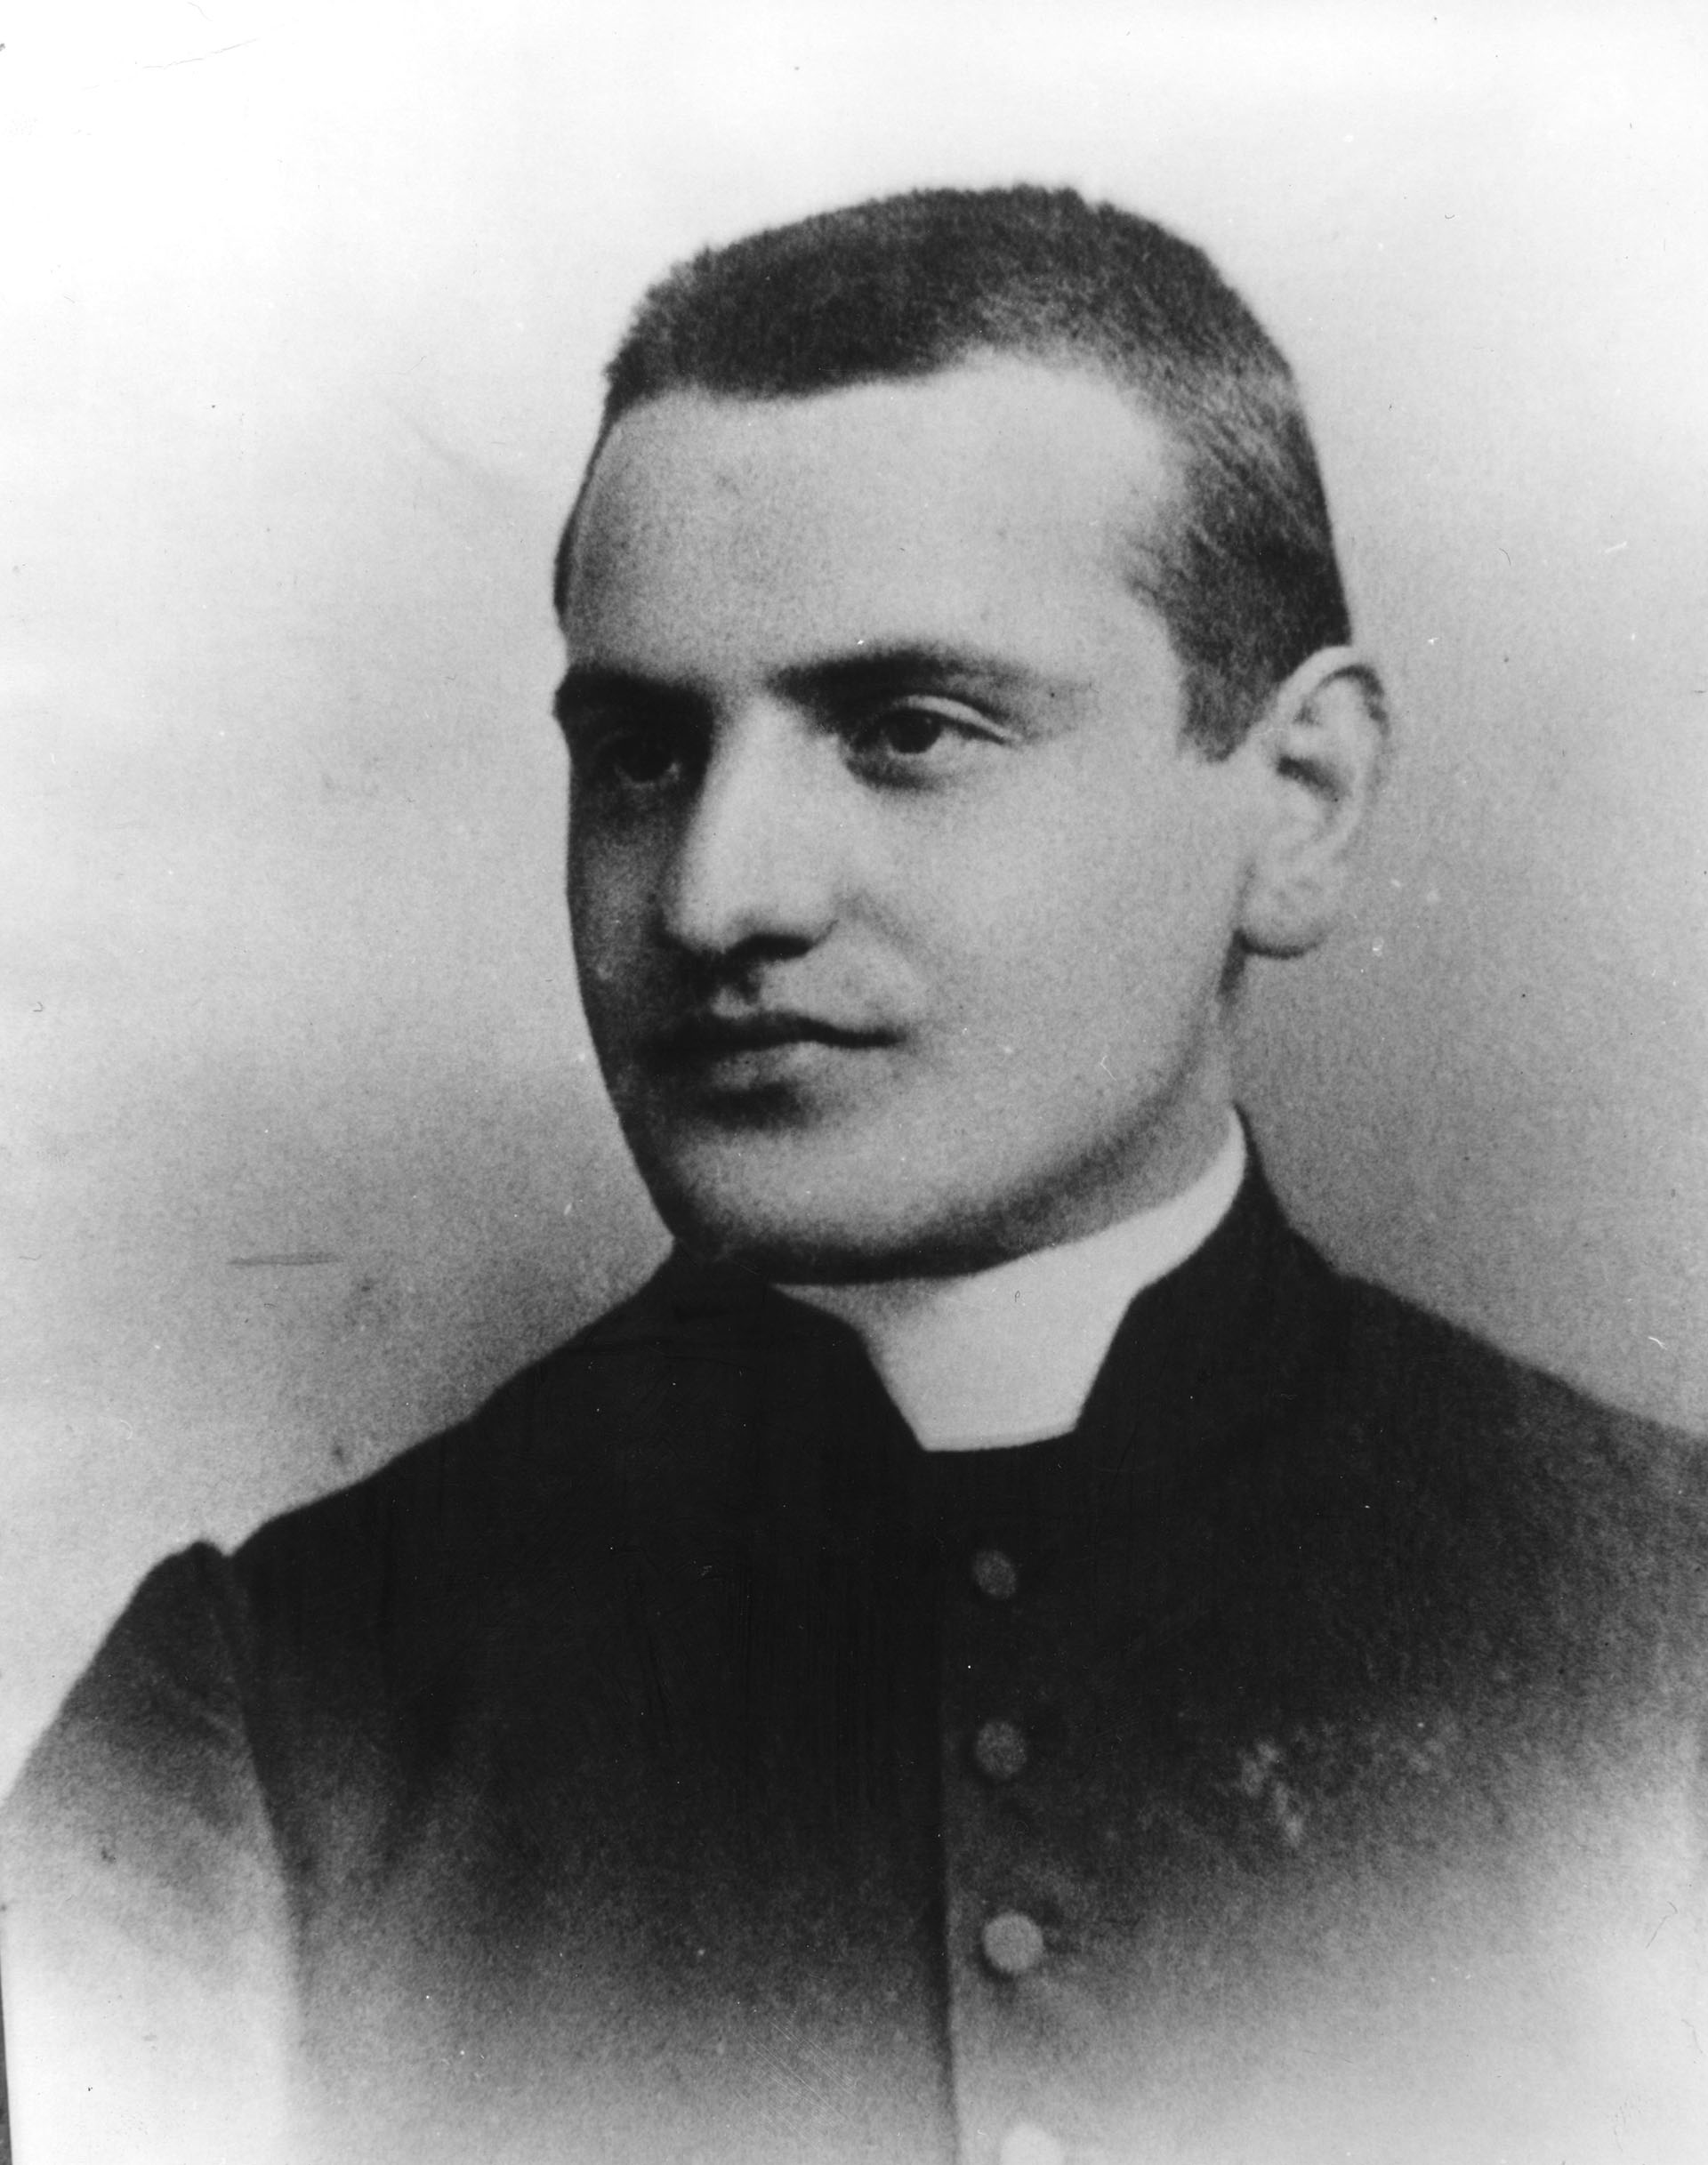 Angelo Giuseppe Roncalli en 1905, cuando era secretario del obispo de Bérgamo (Keystone/Getty Images)
